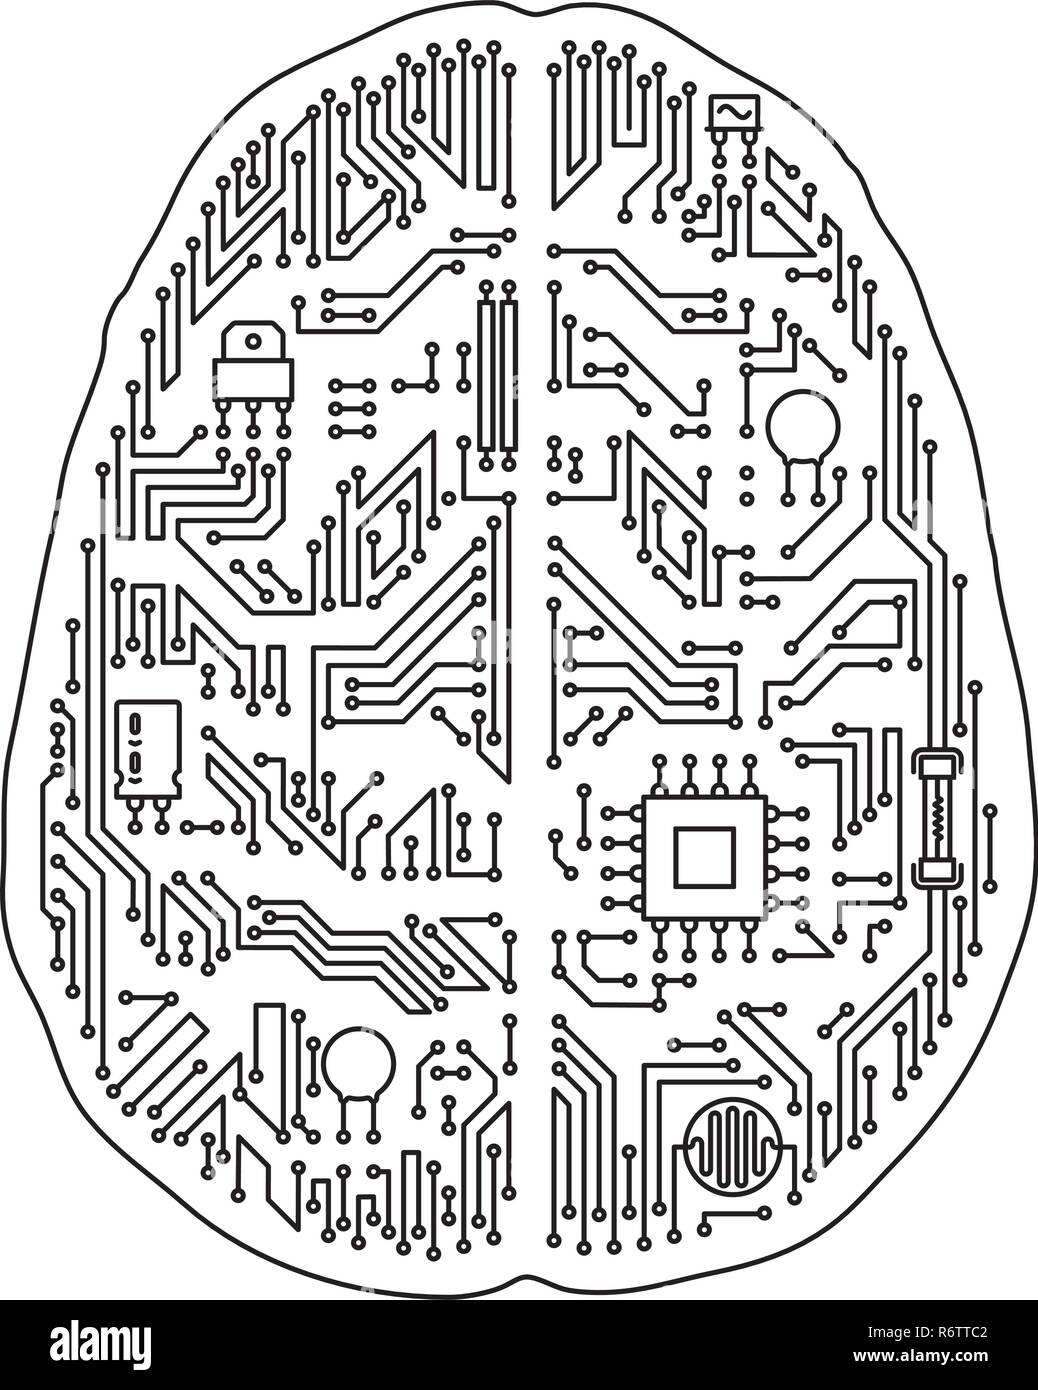 Hauptplatine des menschlichen Gehirns geformt isoliert Vector Illustration. Schwarze und weiße künstliche Intelligenz und Technologie Konzept. Stock Vektor